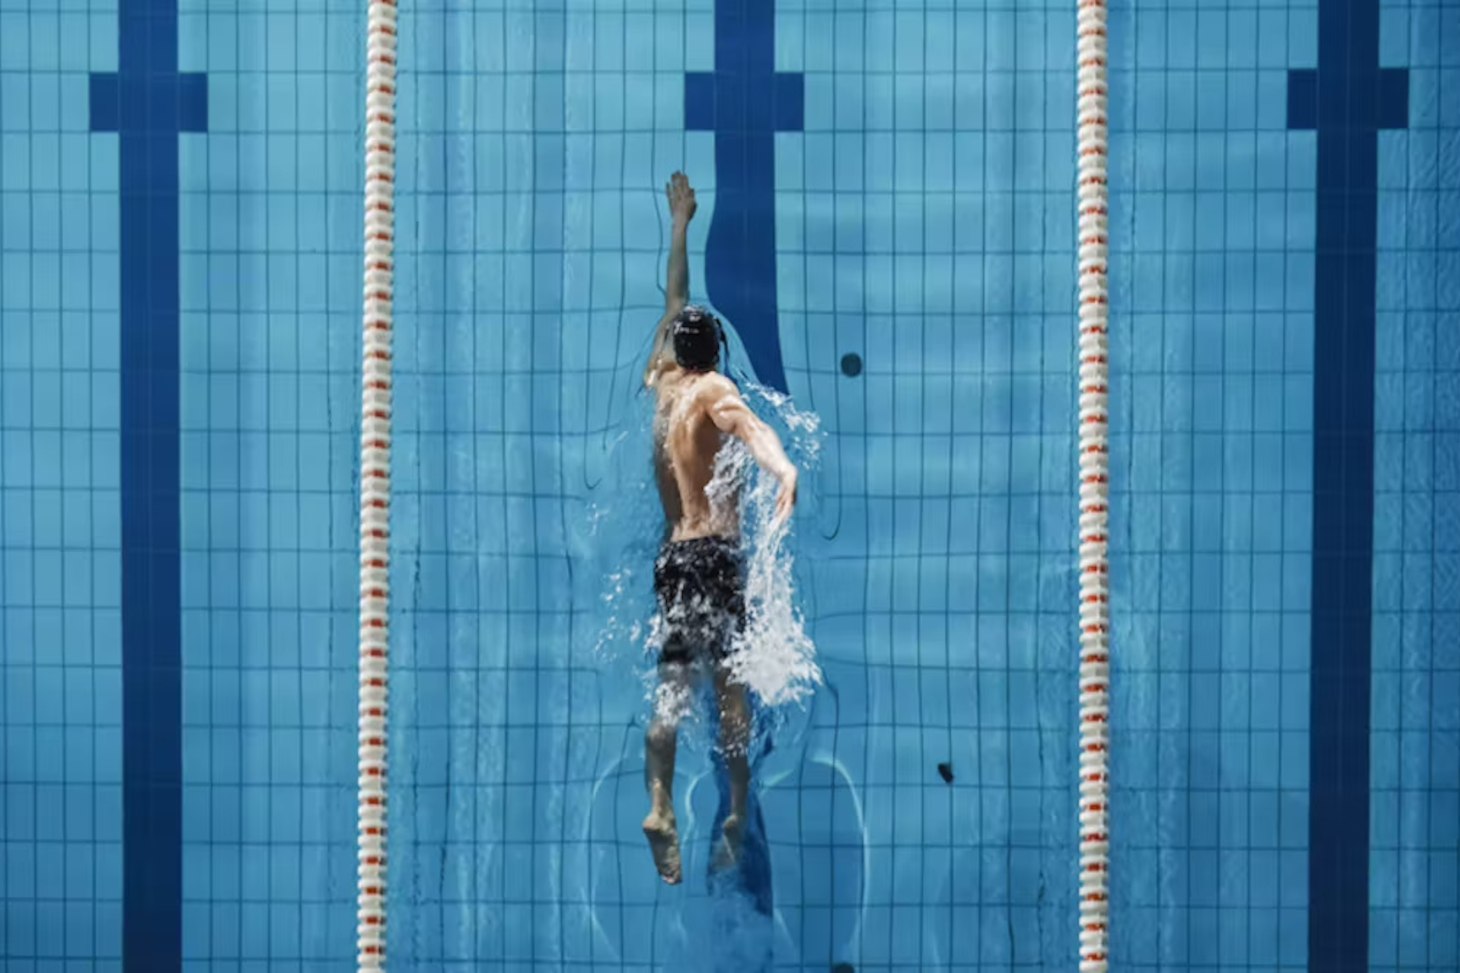 Pour mener un double projet d'étude et de compétition sportive, il faut un emploi du temps millimétré. Shutterstock